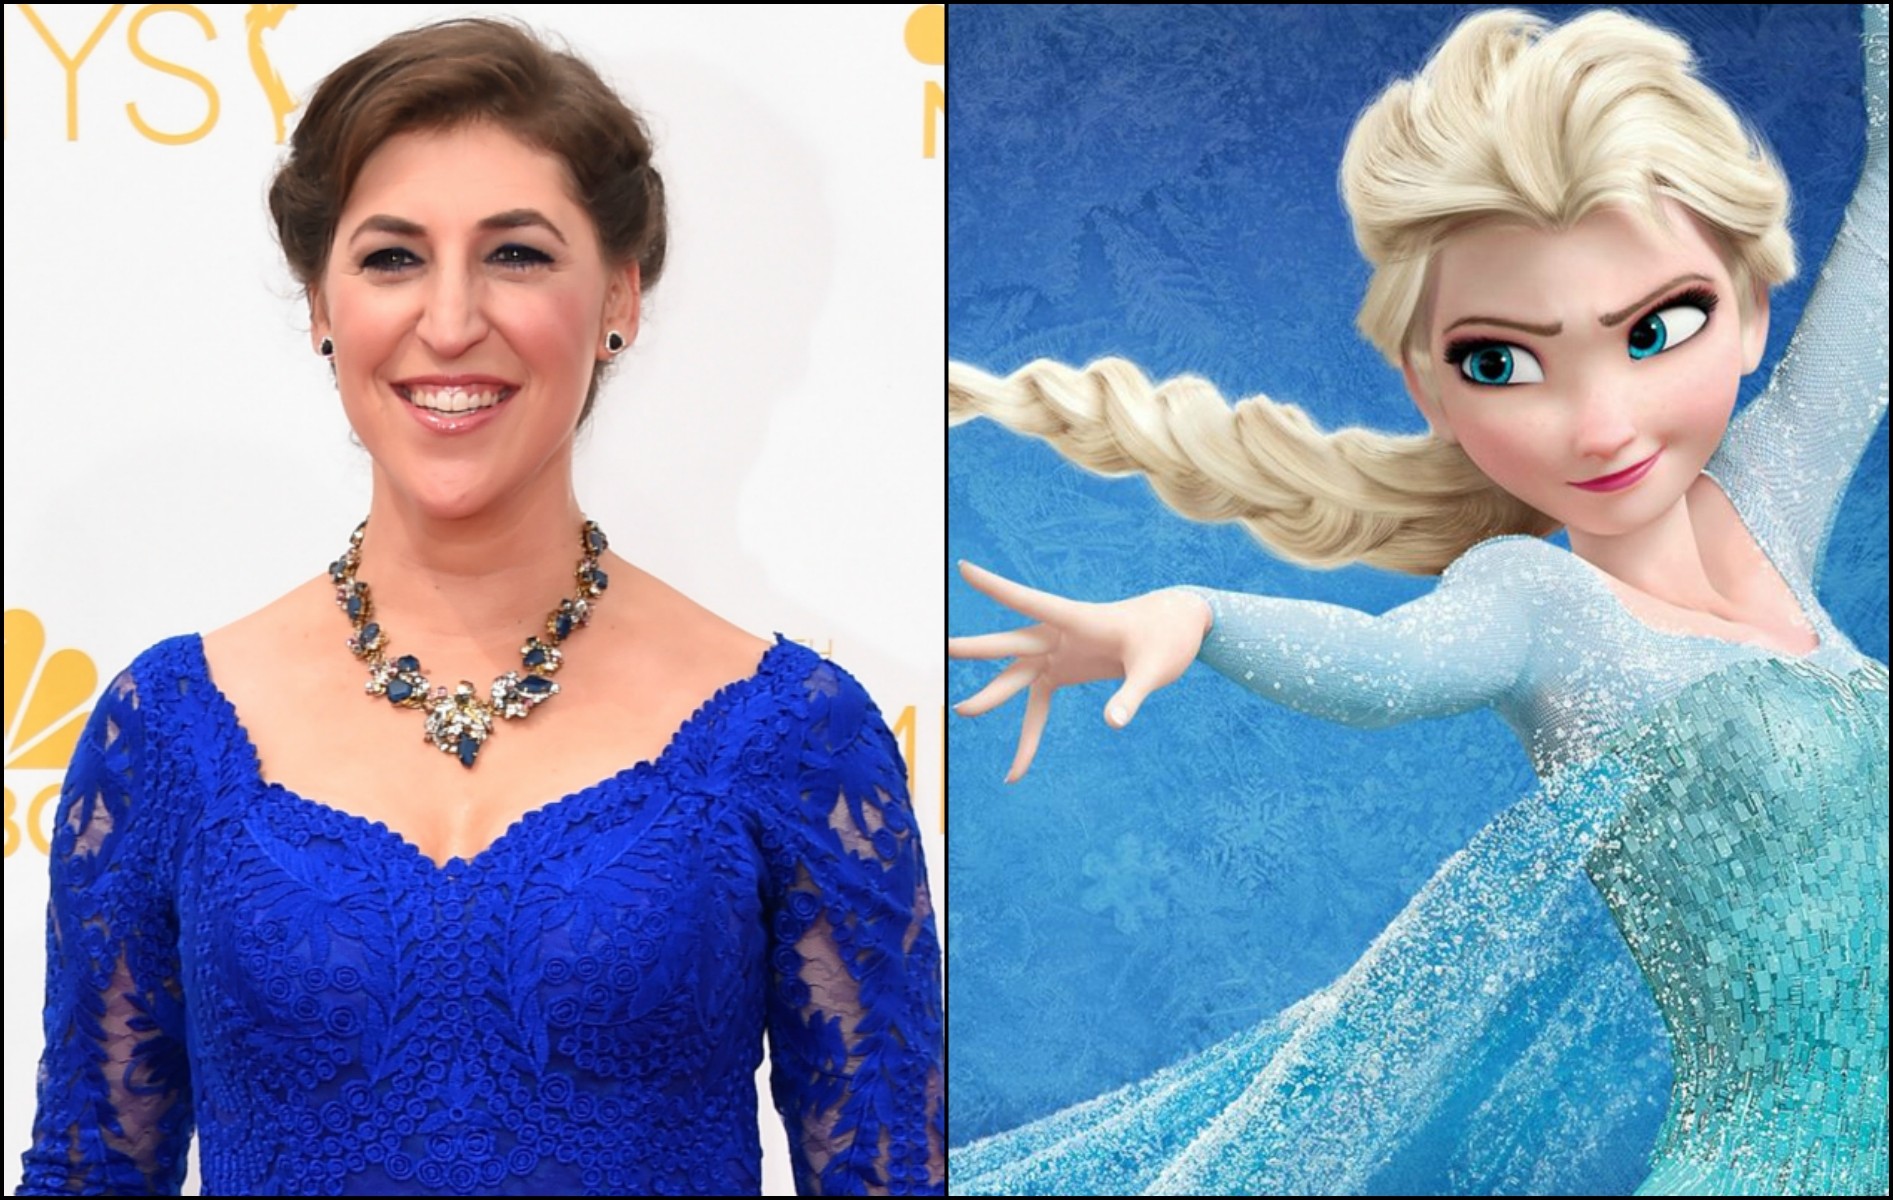 Mayim Bialik detestou o visual das protagonistas de 'Frozen'. (Foto: Getty Images e Reprodução)